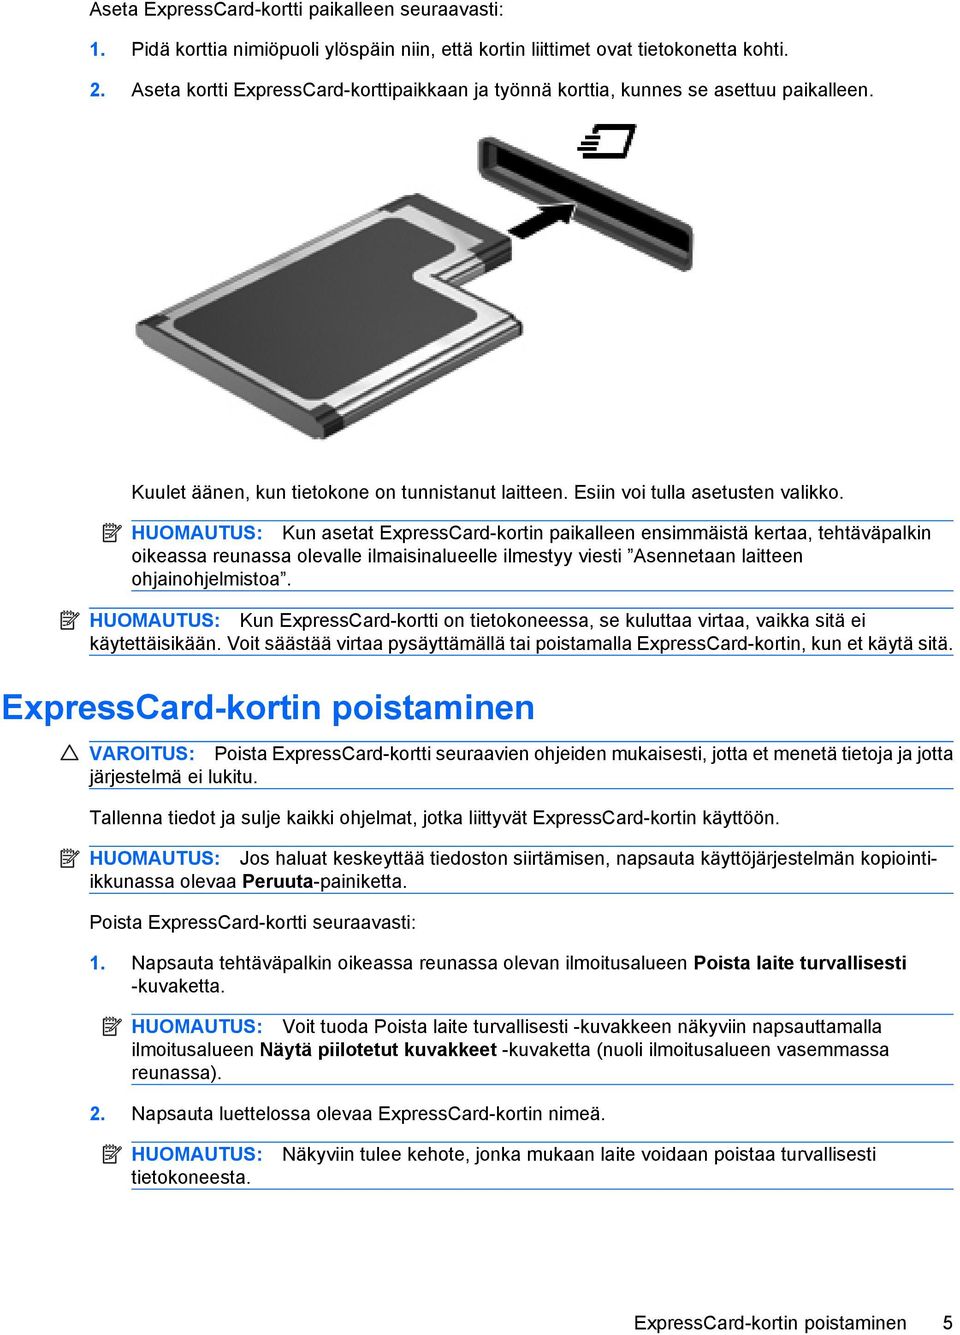 HUOMAUTUS: Kun asetat ExpressCard-kortin paikalleen ensimmäistä kertaa, tehtäväpalkin oikeassa reunassa olevalle ilmaisinalueelle ilmestyy viesti Asennetaan laitteen ohjainohjelmistoa.